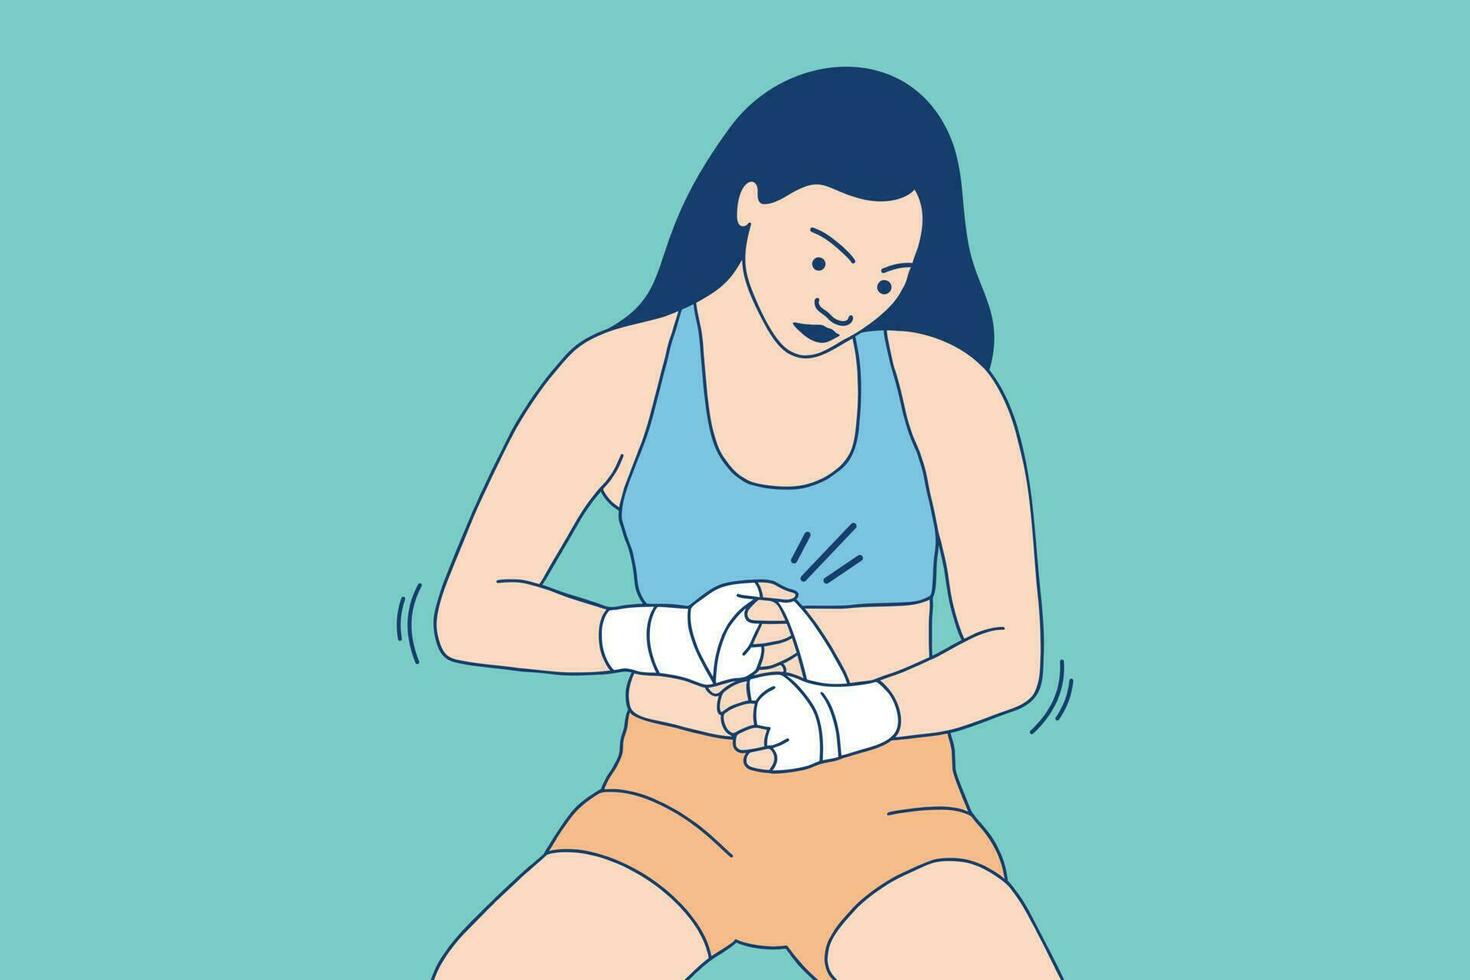 illustrazioni di bellissimo pugile donna avvolgere sua mano pronto per boxe vettore